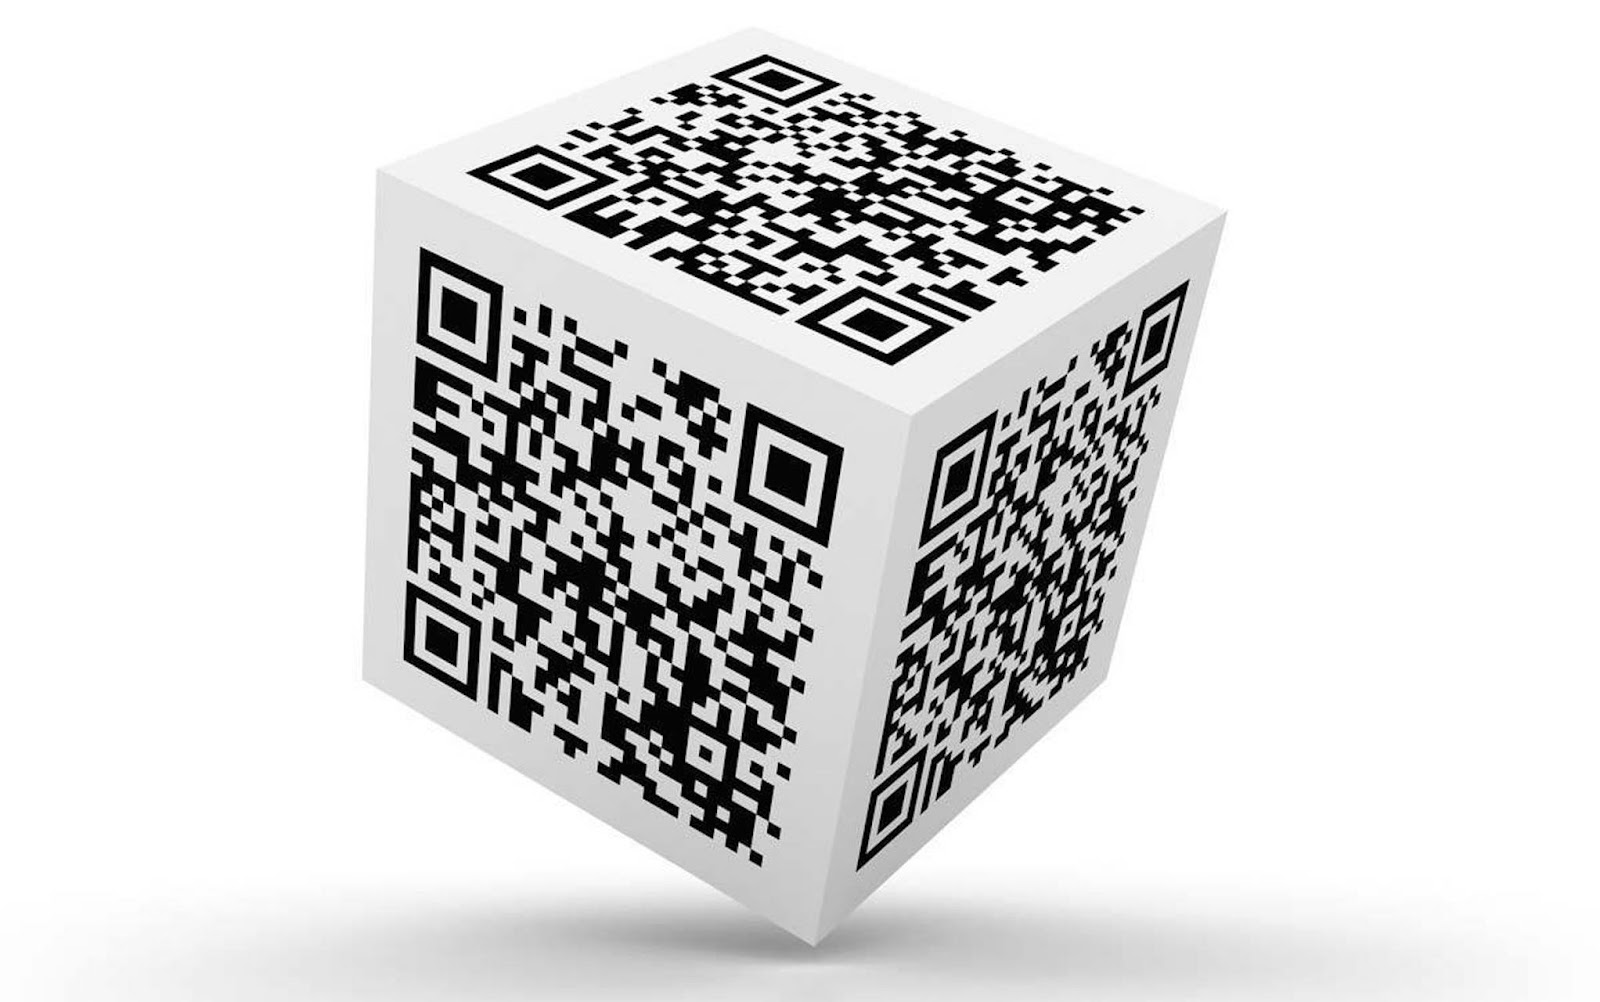 Qr код на бумаге. Генератор кьюар кода. Куб с QR кодом. Изображение QR кода. Объемный QR код.